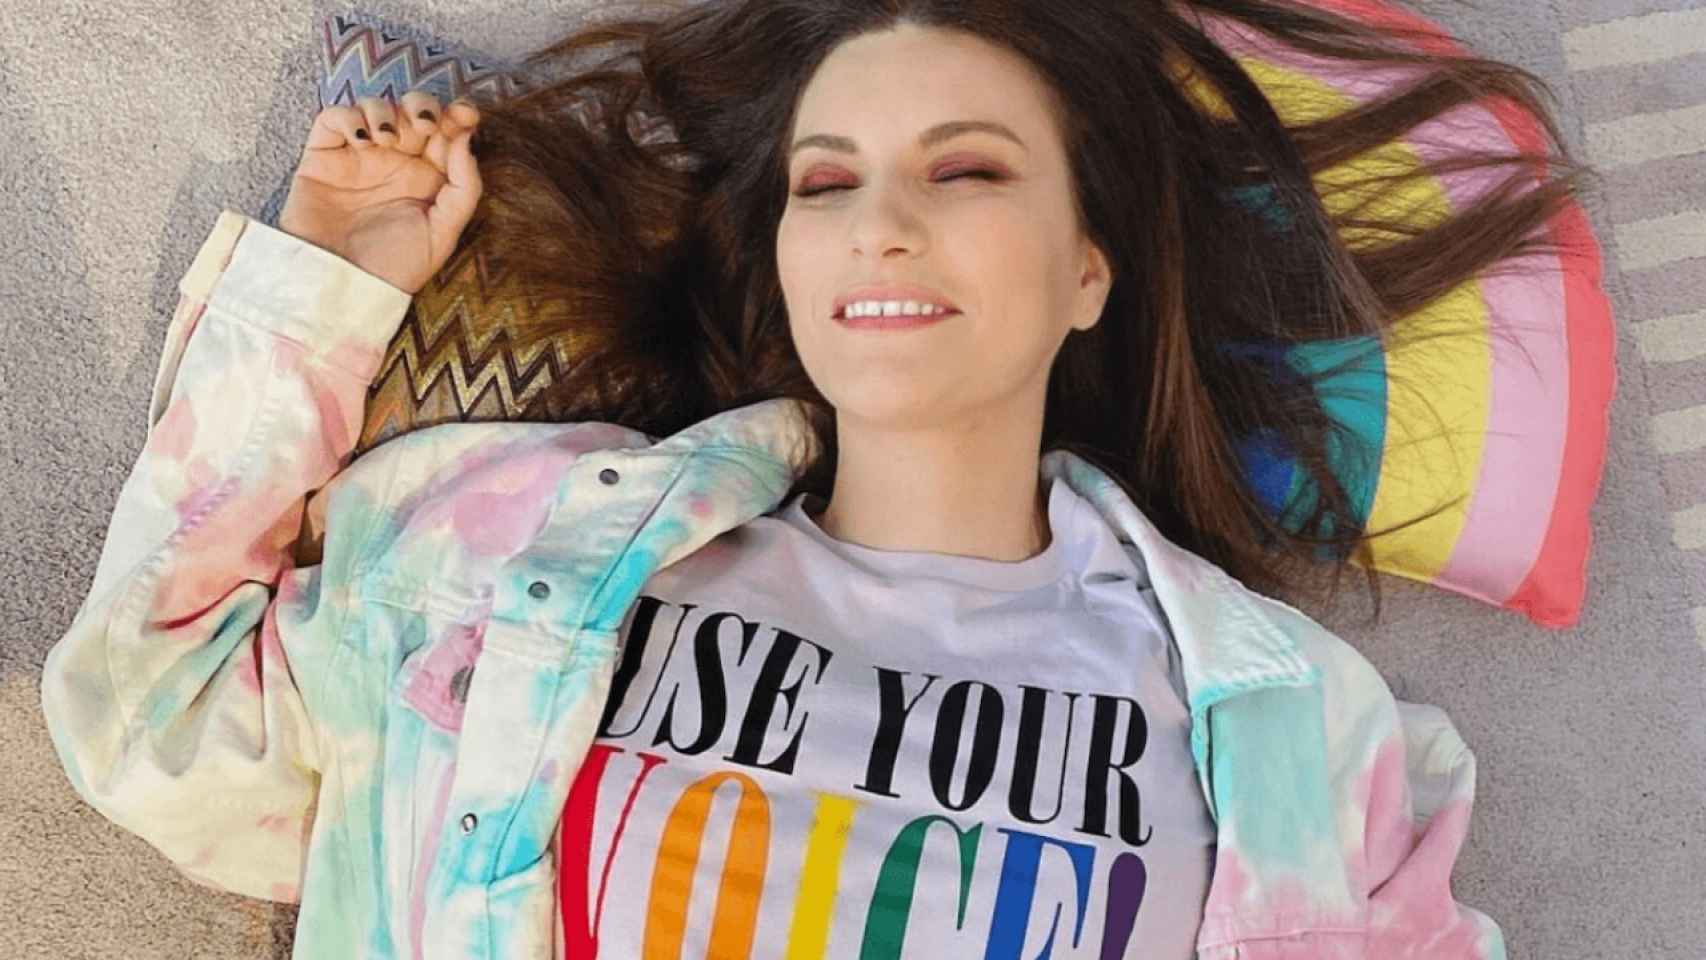 Pausini en una imagen subida por ella misma a su perfil de Instagram donde reivindica los derechos de los homosexuales.